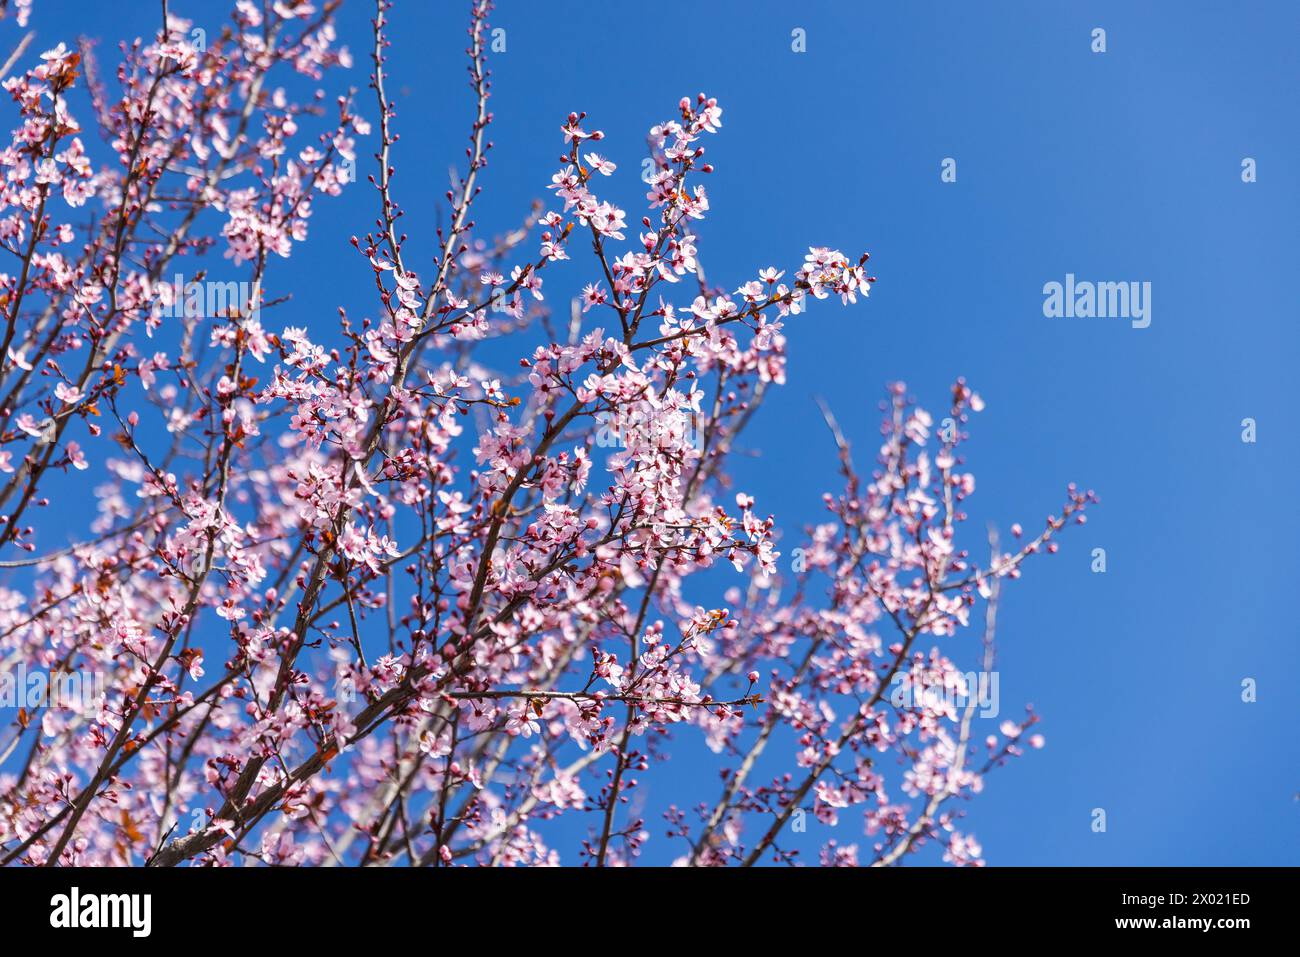 Cherry plum in bloom is under clear blue sky. Prunus cerasifera flowers Stock Photo